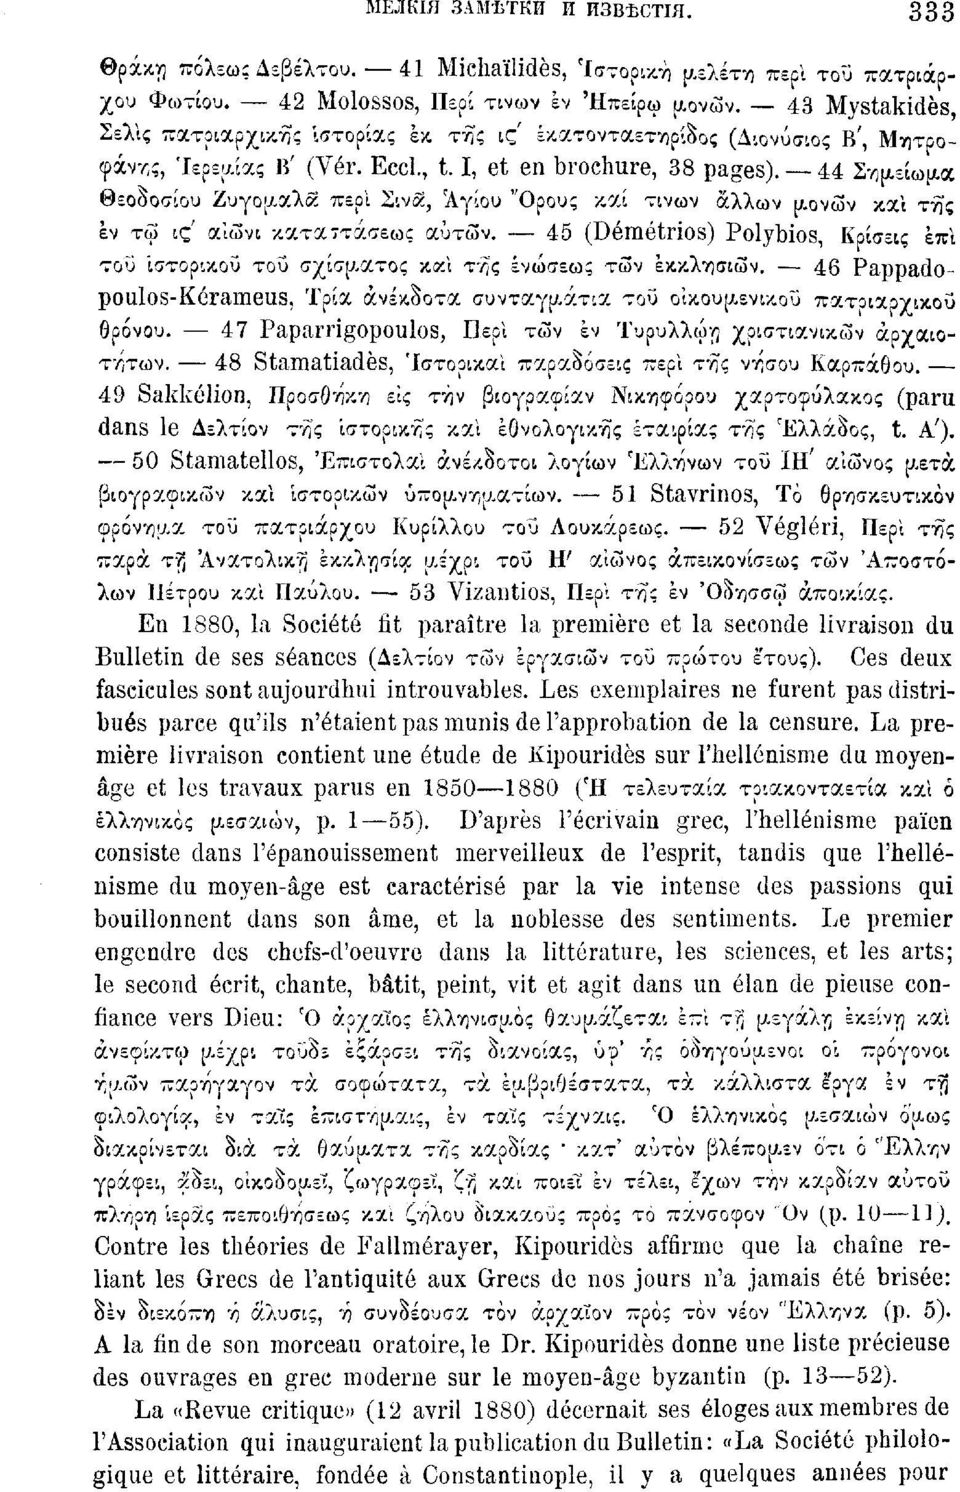 44 Σημείωμα Θεοοοσίου Ζυγομαλκ περί Σινκ, Αγίου "Ορους καί τίνων άλλων μονών καί της εν τω ι ς' αίώνι κατά-τάσεως αυτών.